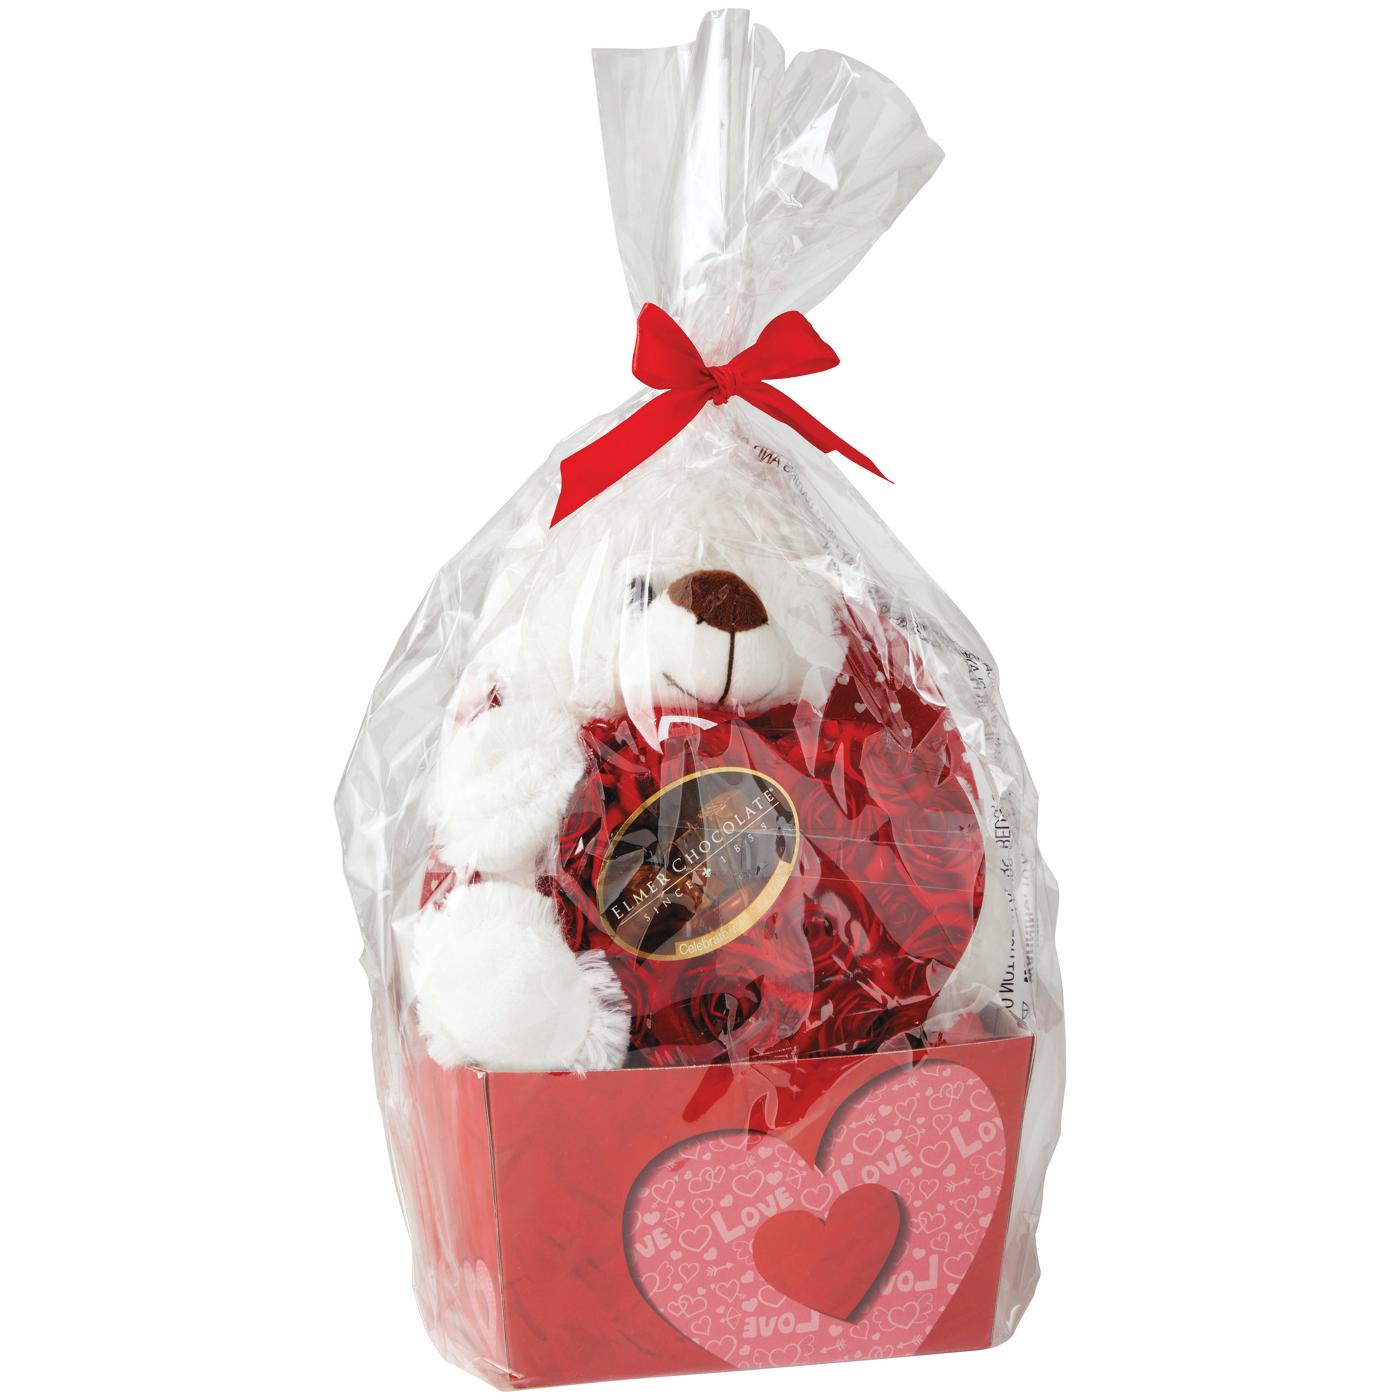 Megatoys Valentine Plush Gift Box with Chocolates; image 2 of 2